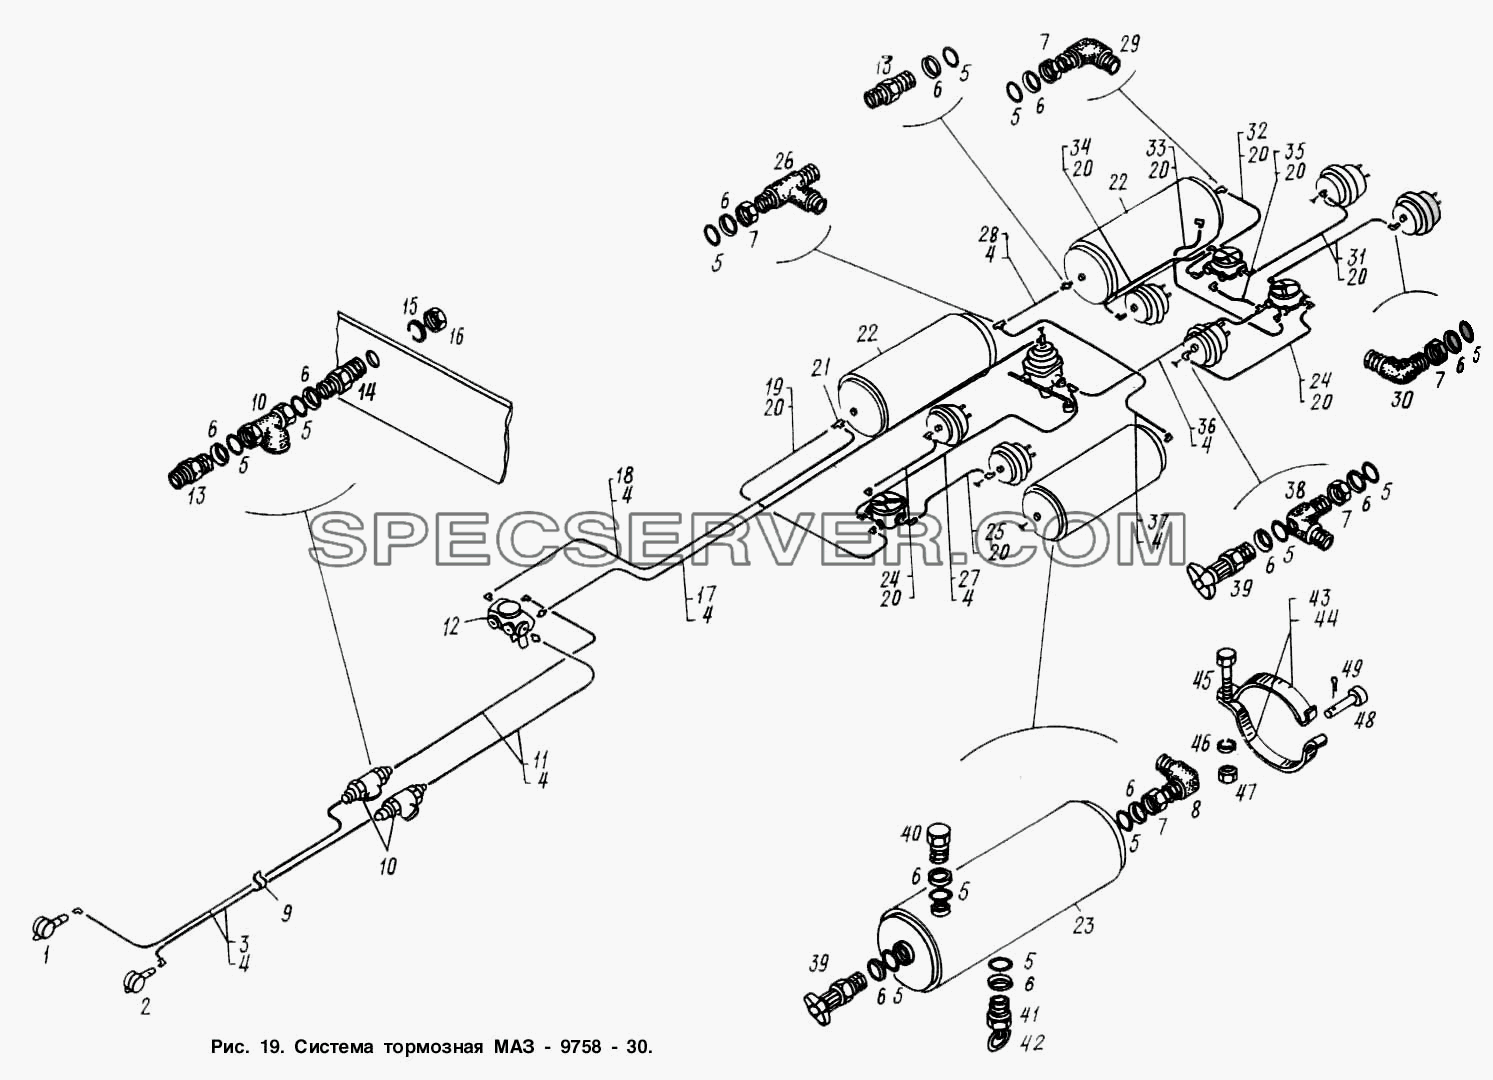 Система тормозная МАЗ 9758-30 для МАЗ-9758-30 (список запасных частей)